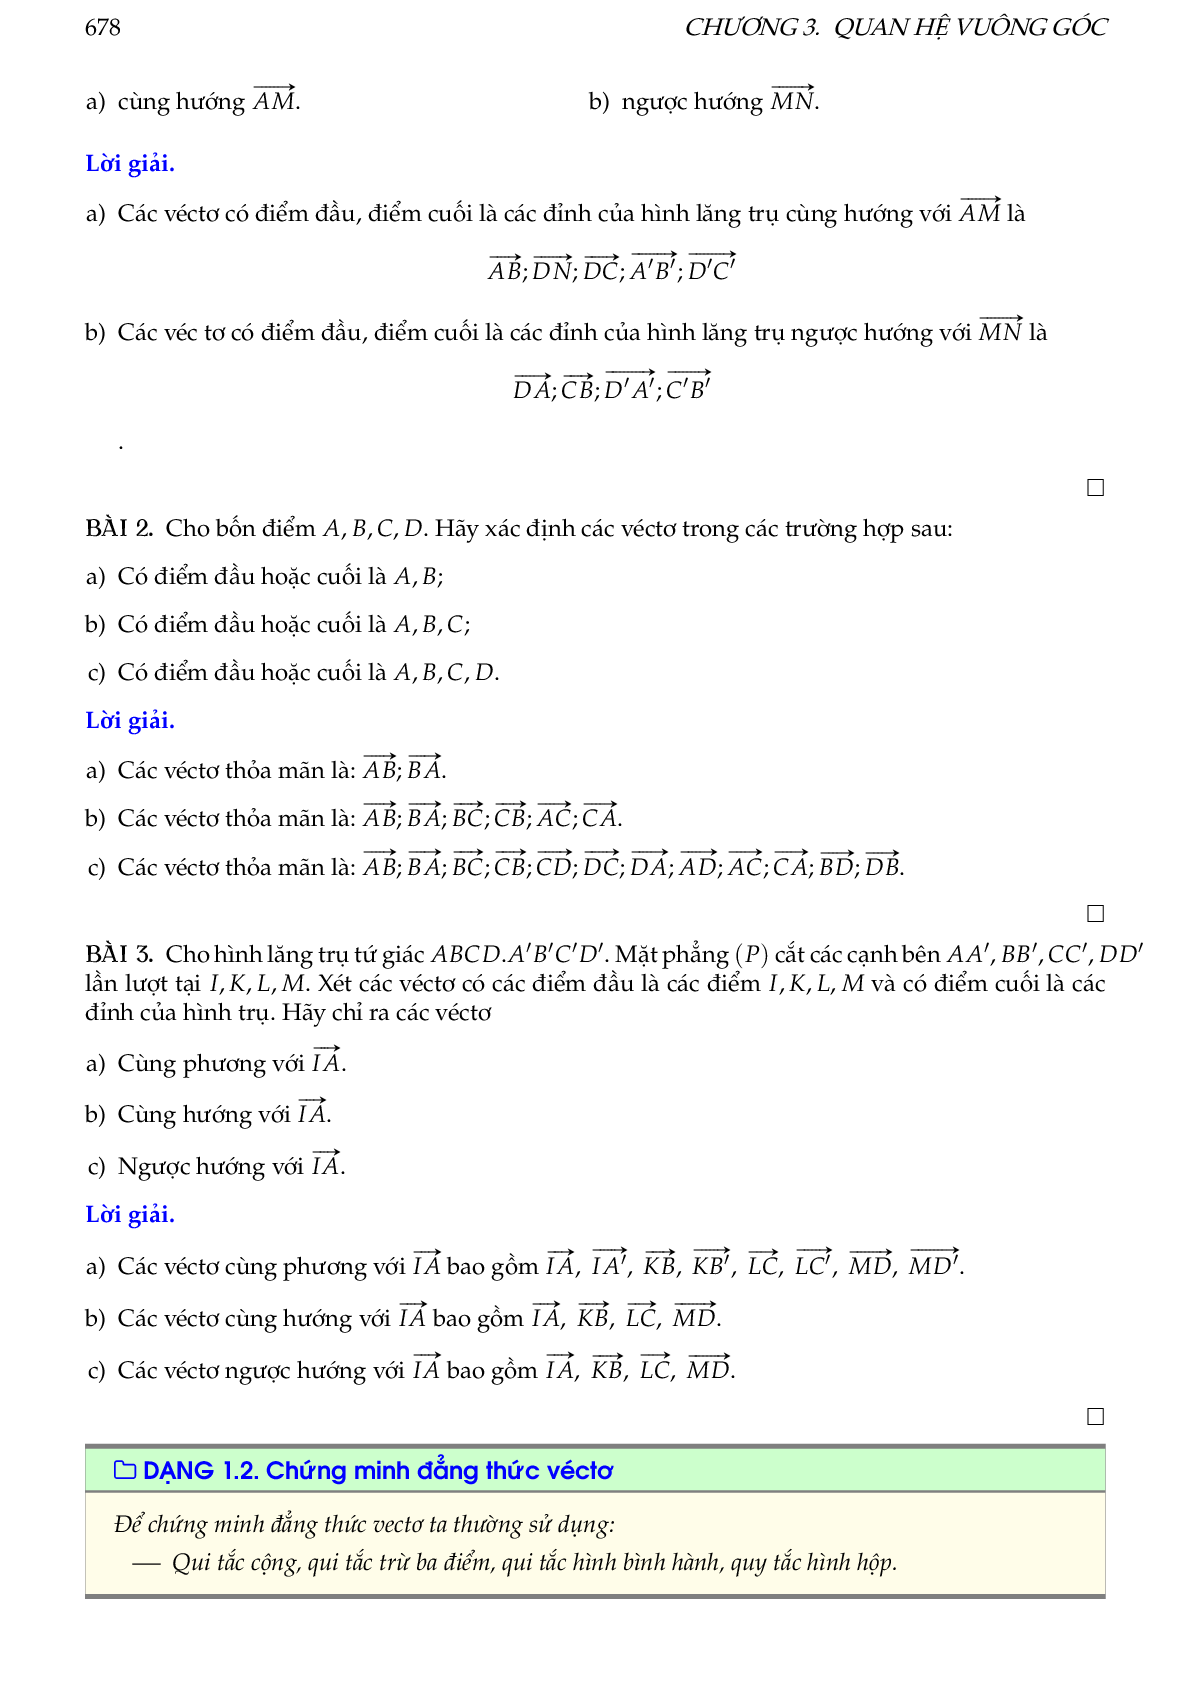 Hướng dẫn giải các dạng toán vectơ trong không gian, quan hệ vuông góc (trang 4)